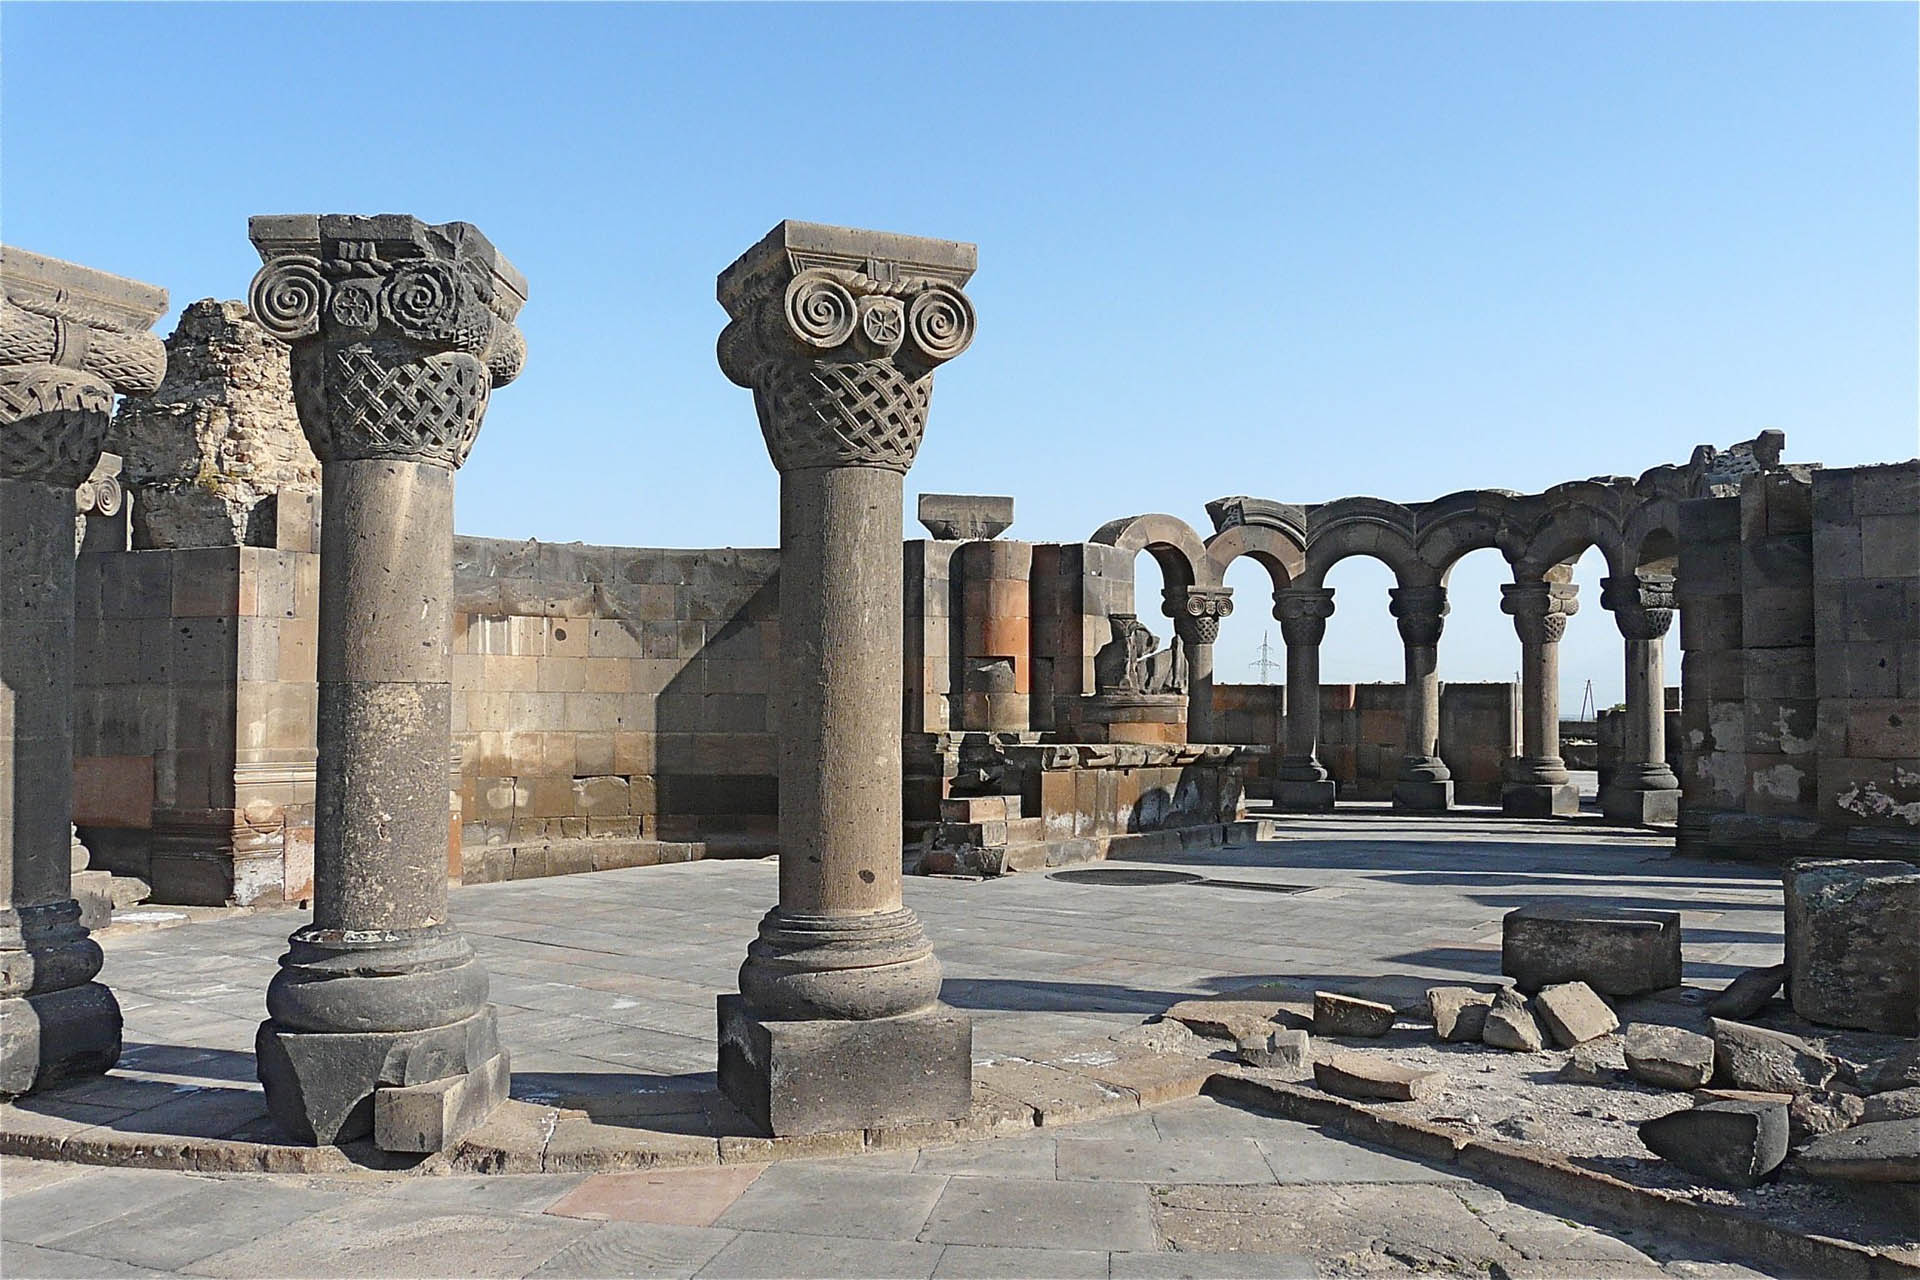 Zvartnots Cathedral of Armenia